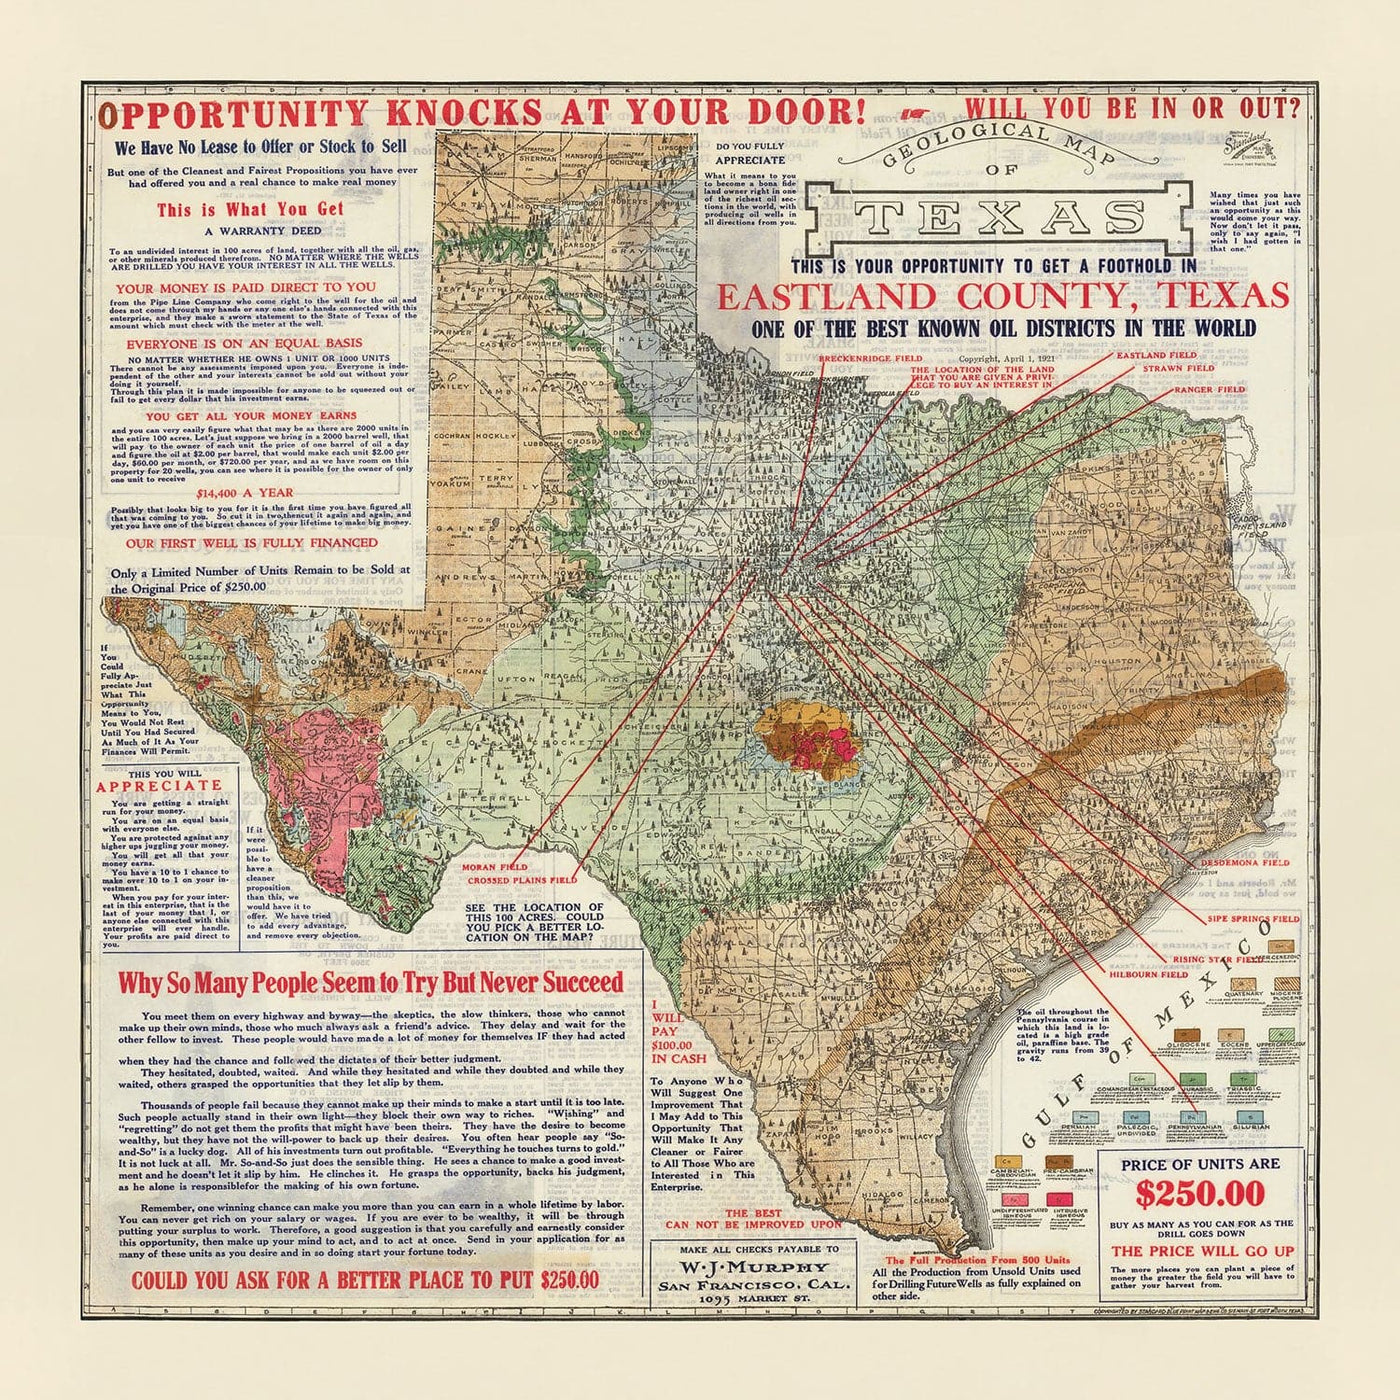 MAPA GEOLÓGICO VIEJO RARO DE TEXAS, 1921 - Tabla de inversión del auge de petróleo del condado de Eastland